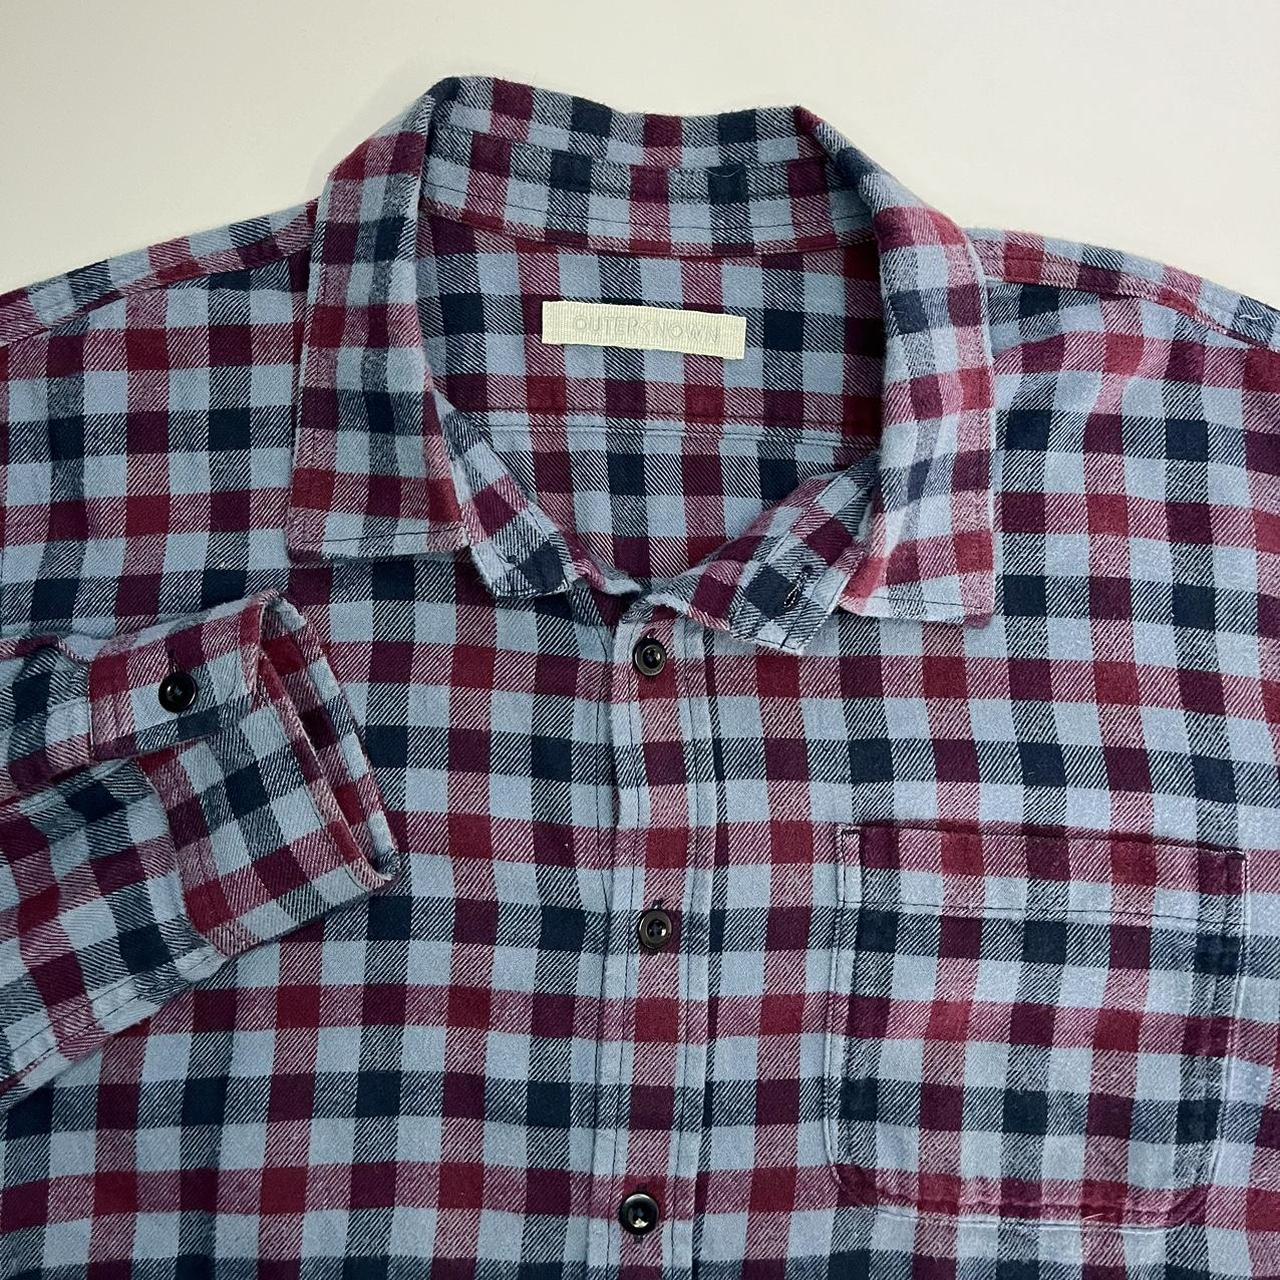 Outerknown Flannel Shirt Men’s Button Up Size L... - Depop